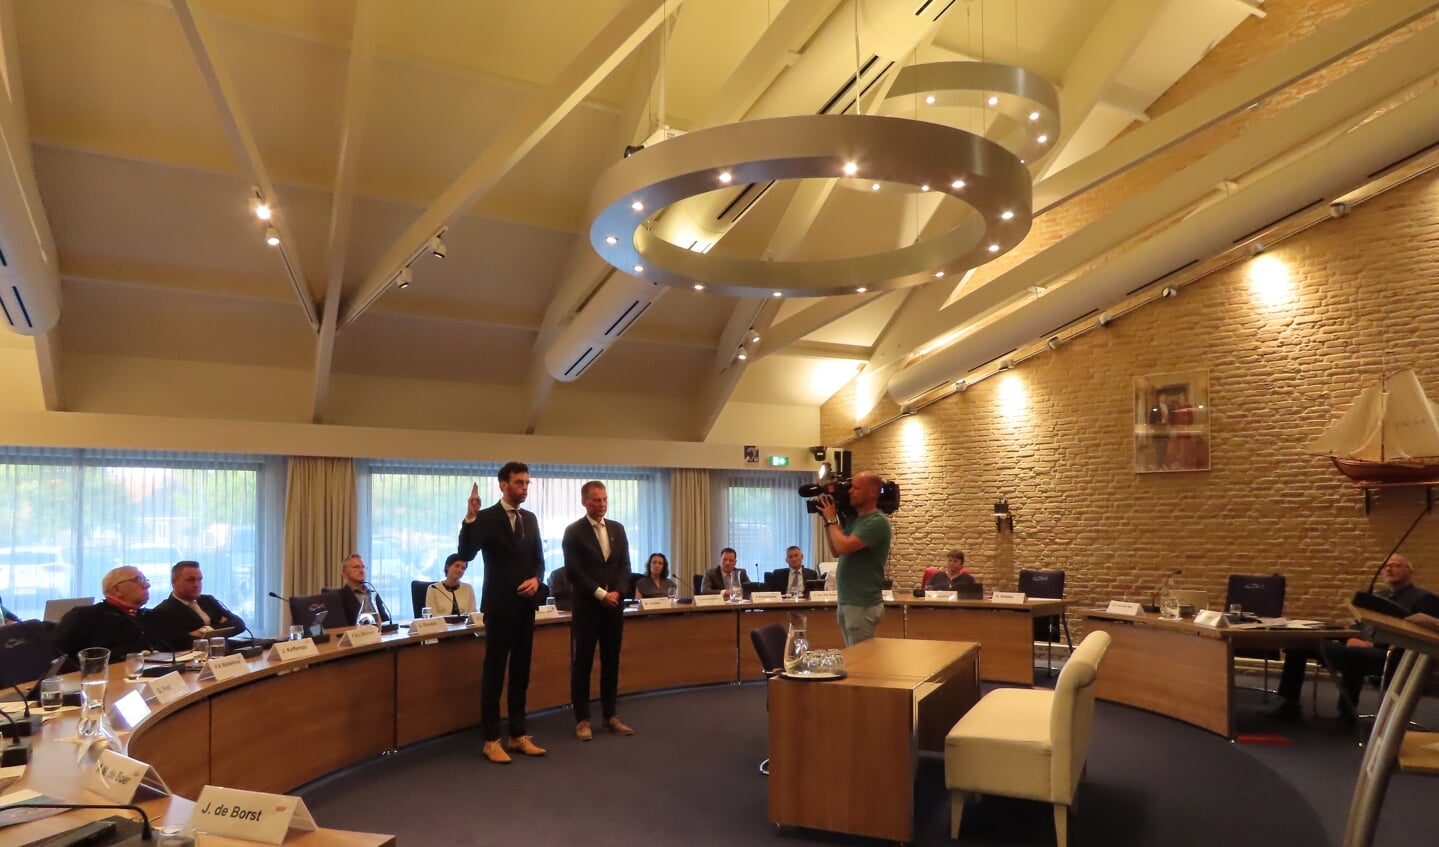 Nathanaël Middelkoop en Freek Brouwer (rechts) zijn gestart met een nieuwe termijn als wethouder.